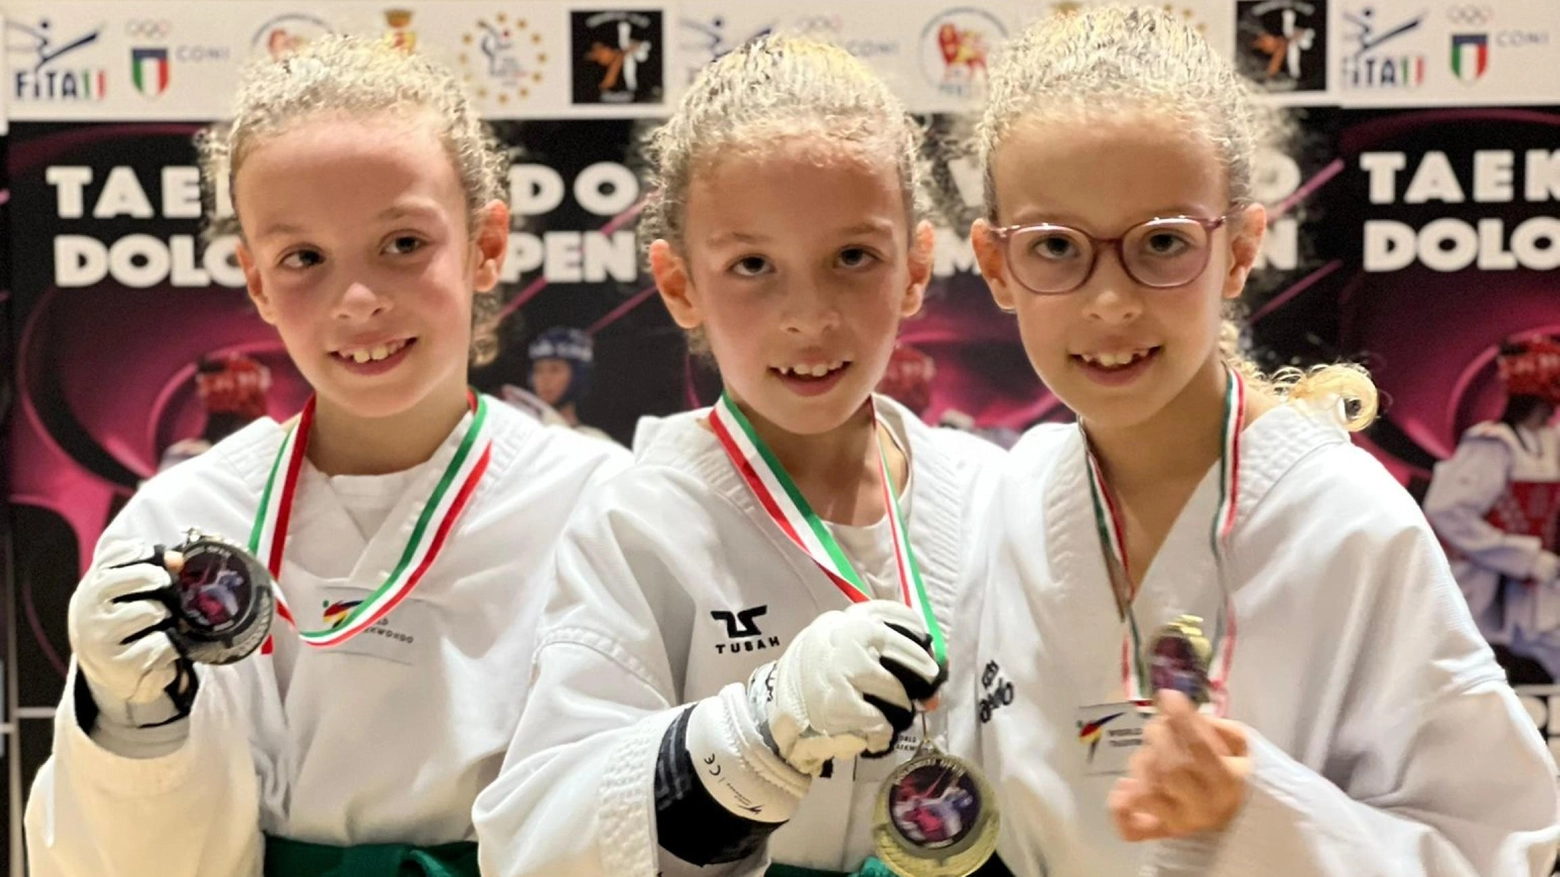 Tre gemelle di 8 anni conquistano oro, argento e bronzo nel Taekwondo (Ansa)